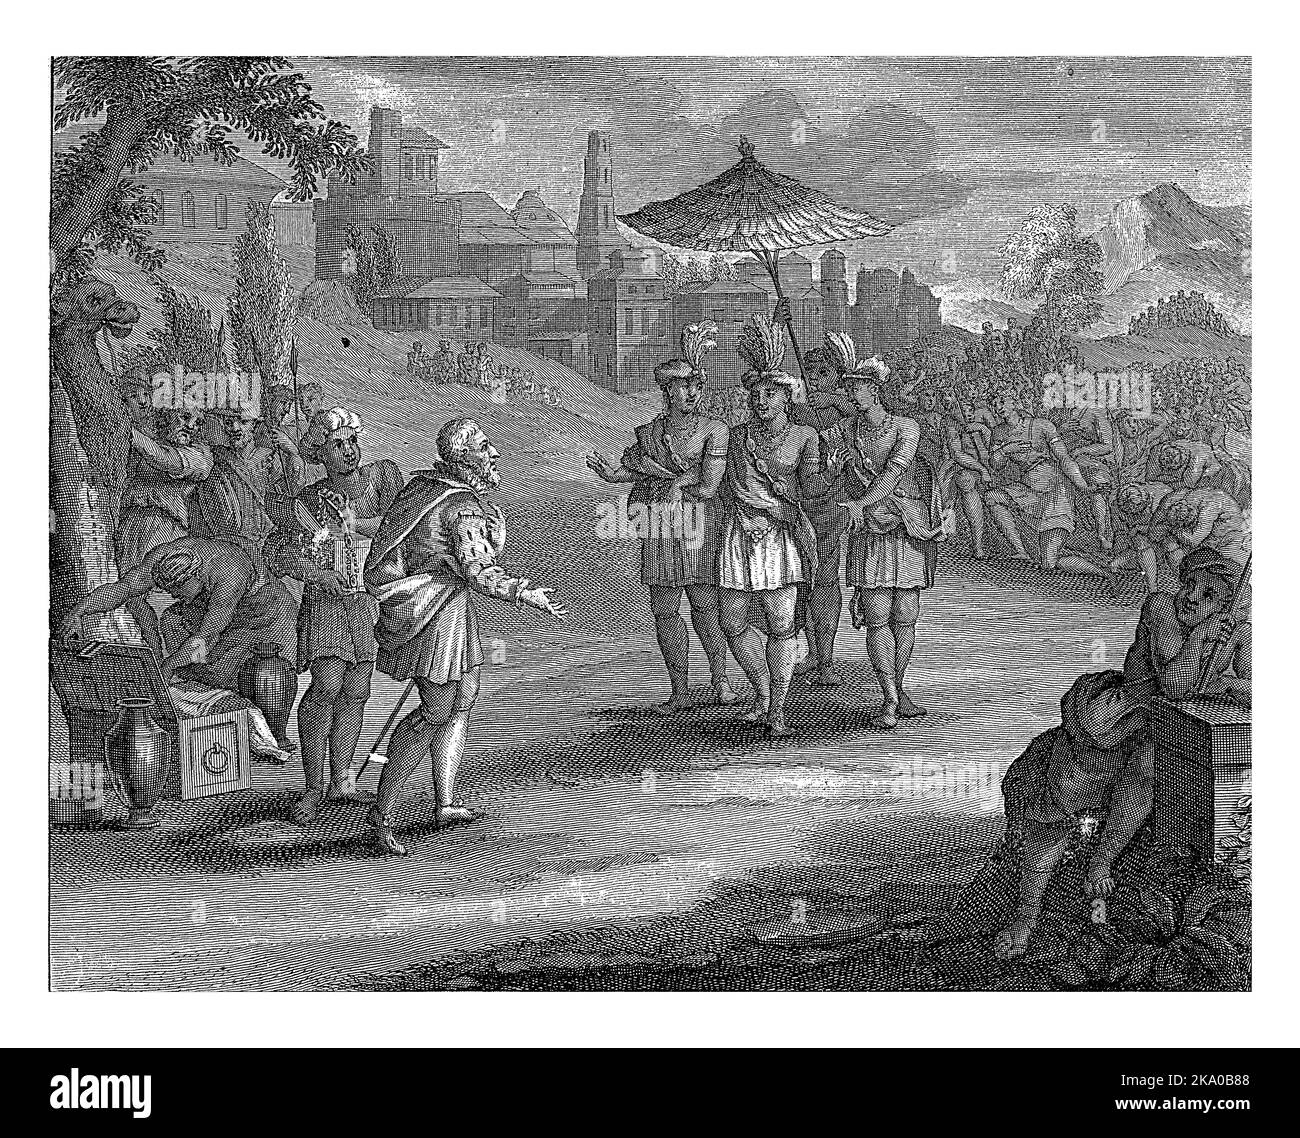 Cortes begrüßt Montezuma außerhalb der Stadt Tenochtitlan. Er bietet ihm Geschenke an. Hinter Montezuma knien Azteken vor ihrem König. Stockfoto